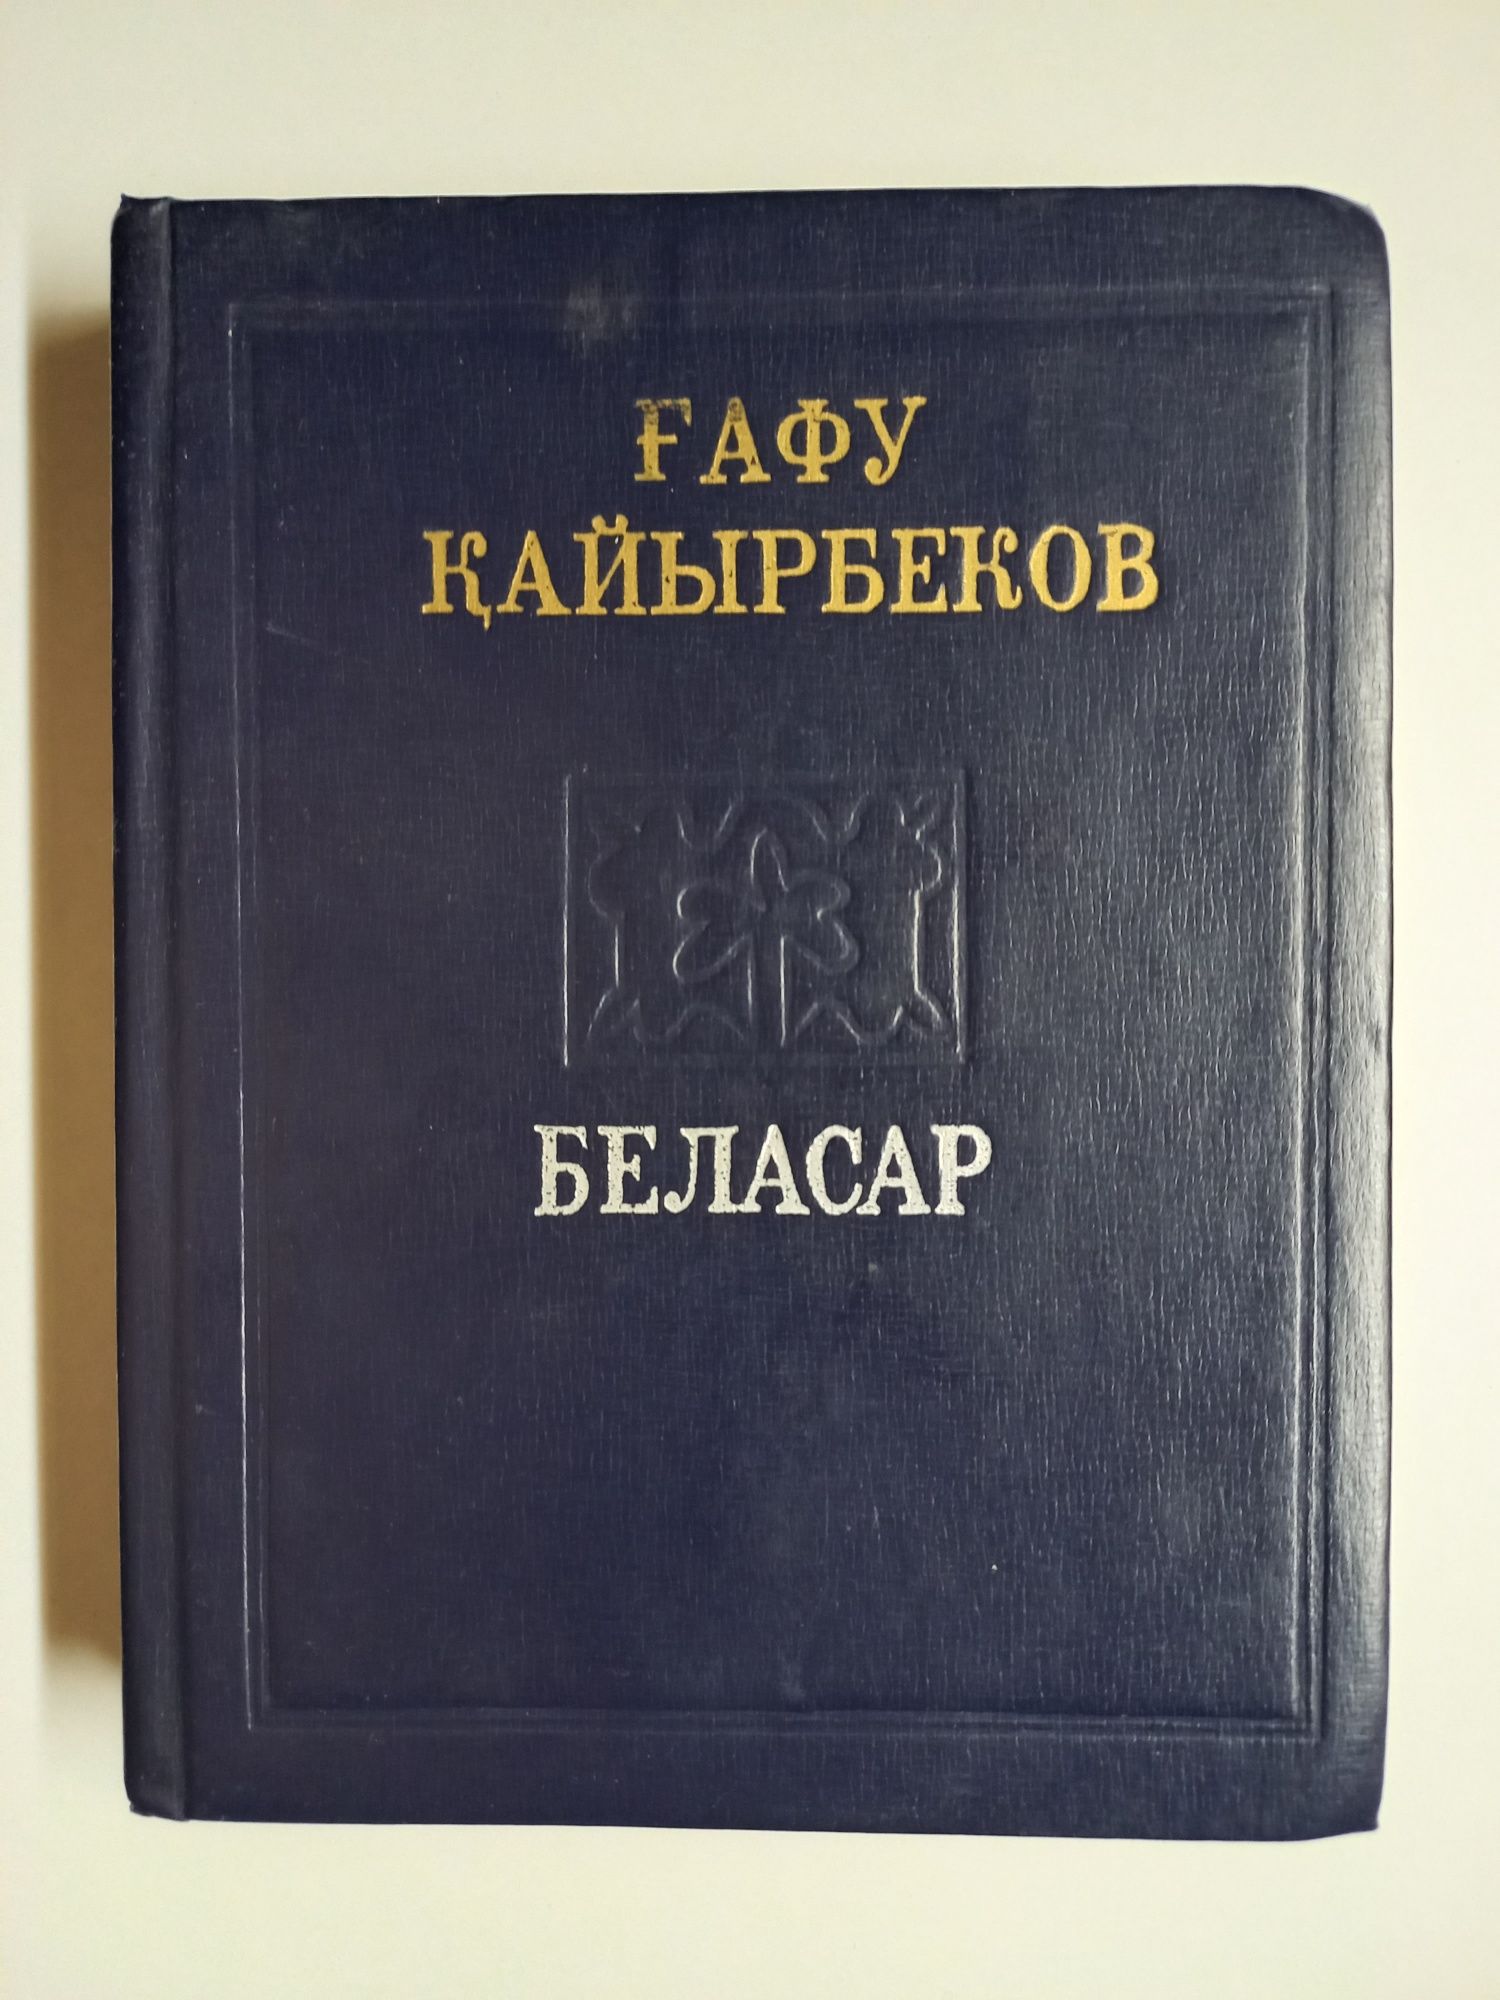 Ғафу Қайырбеков.Избранное в двух томах.
Беласар.